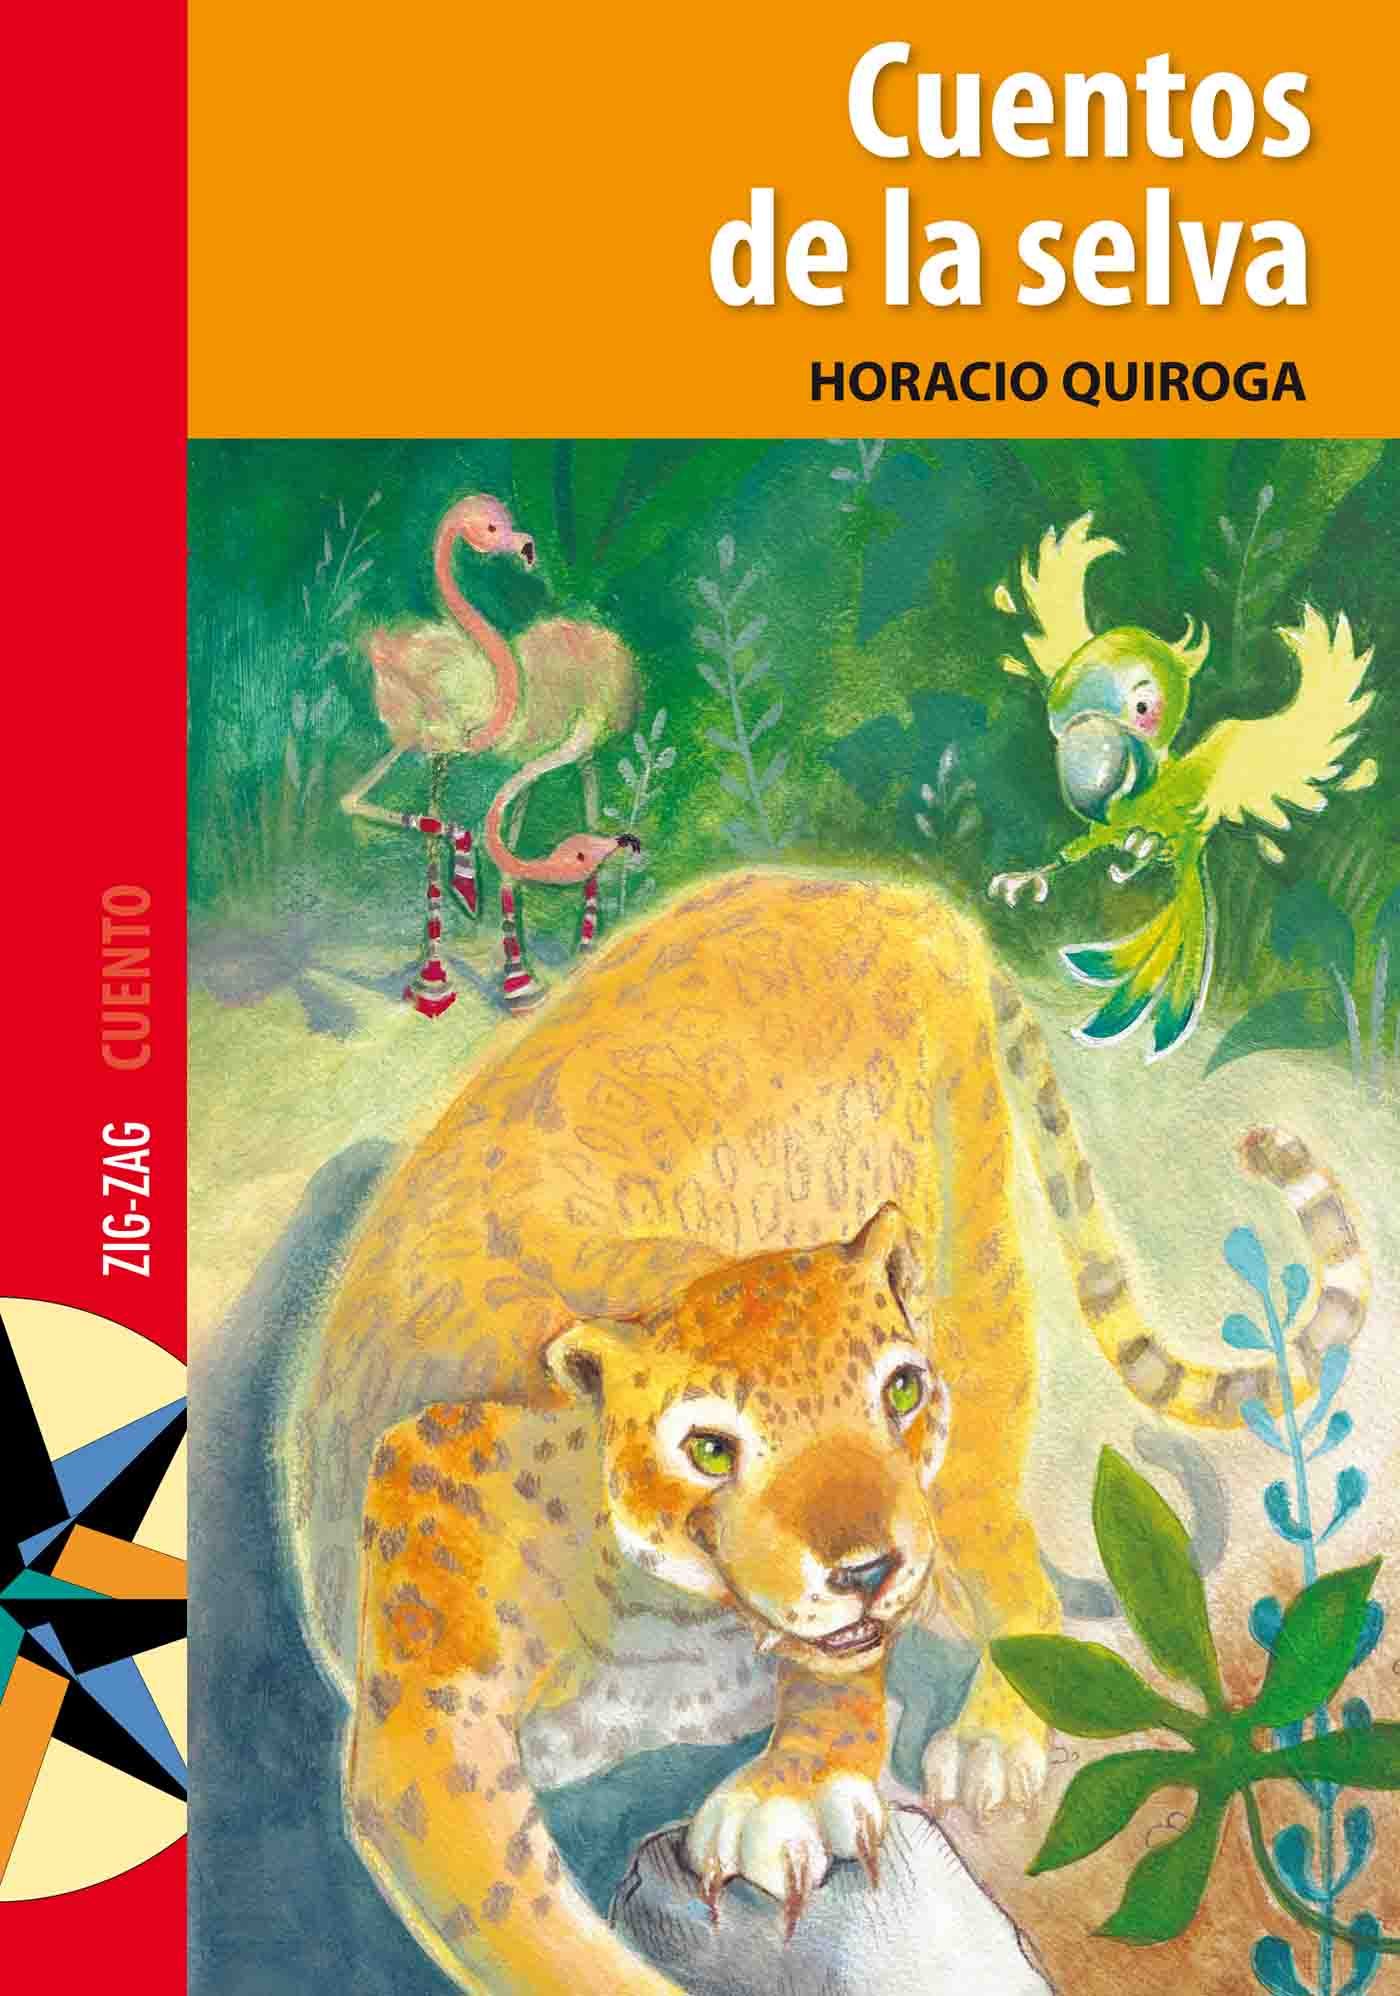 Cuentos De La Selva Ebook Horacio Quiroga Descargar Libro Pdf O Epub 9789561221949 6604